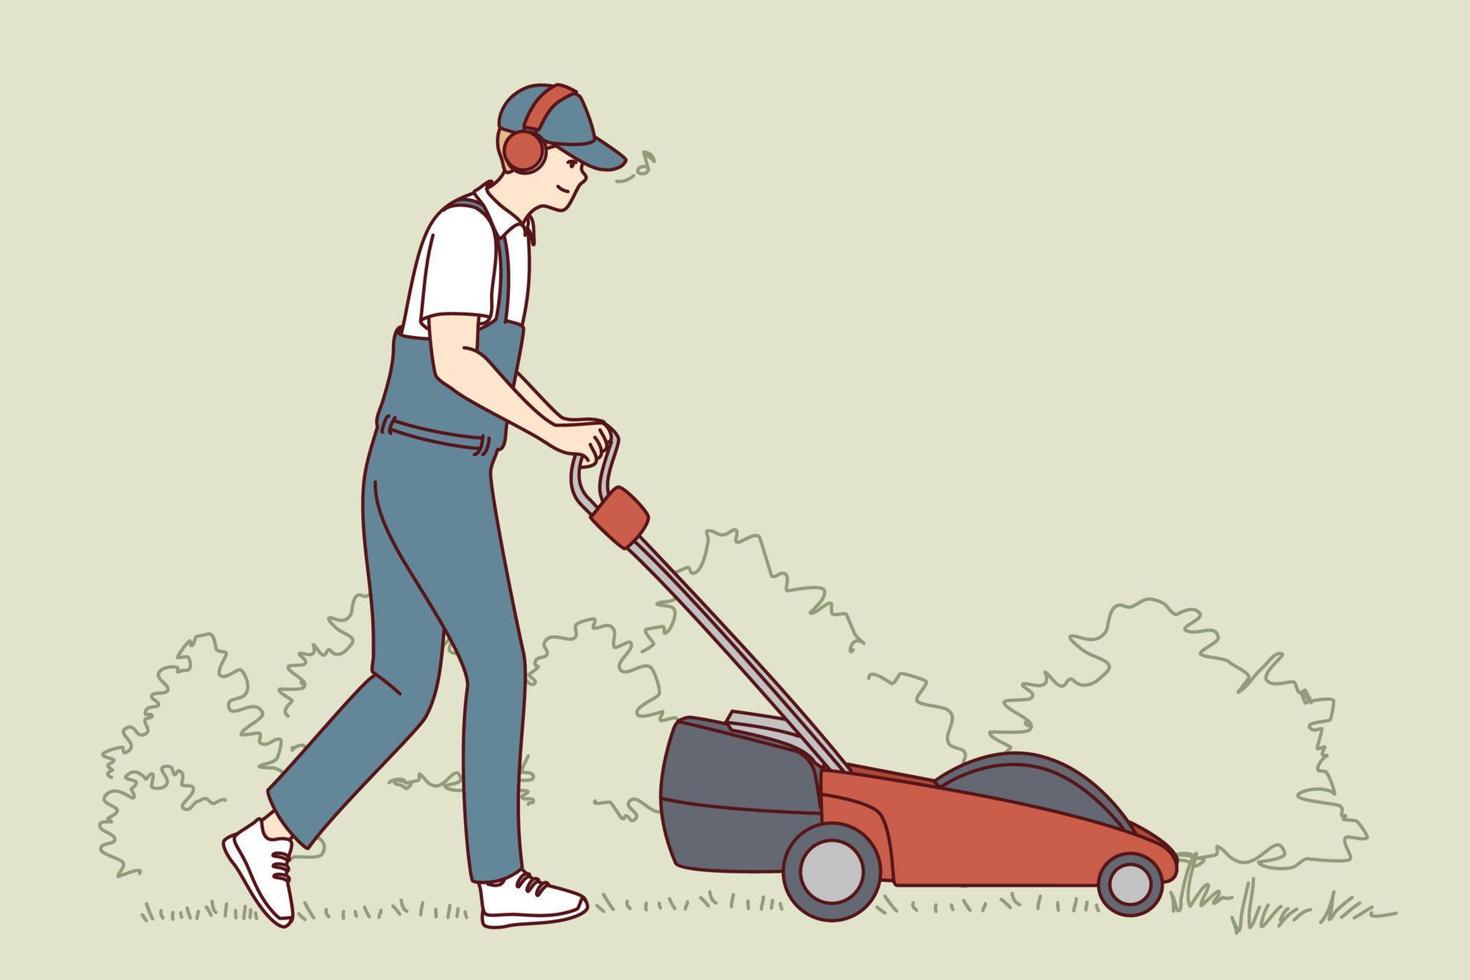 Mann in Uniform geschnittenes Gras mit elektrischem Rasenmäher. mitarbeiter oder arbeiter schieben die rasentrimmermaschine im freien. Vektor-Illustration. vektor